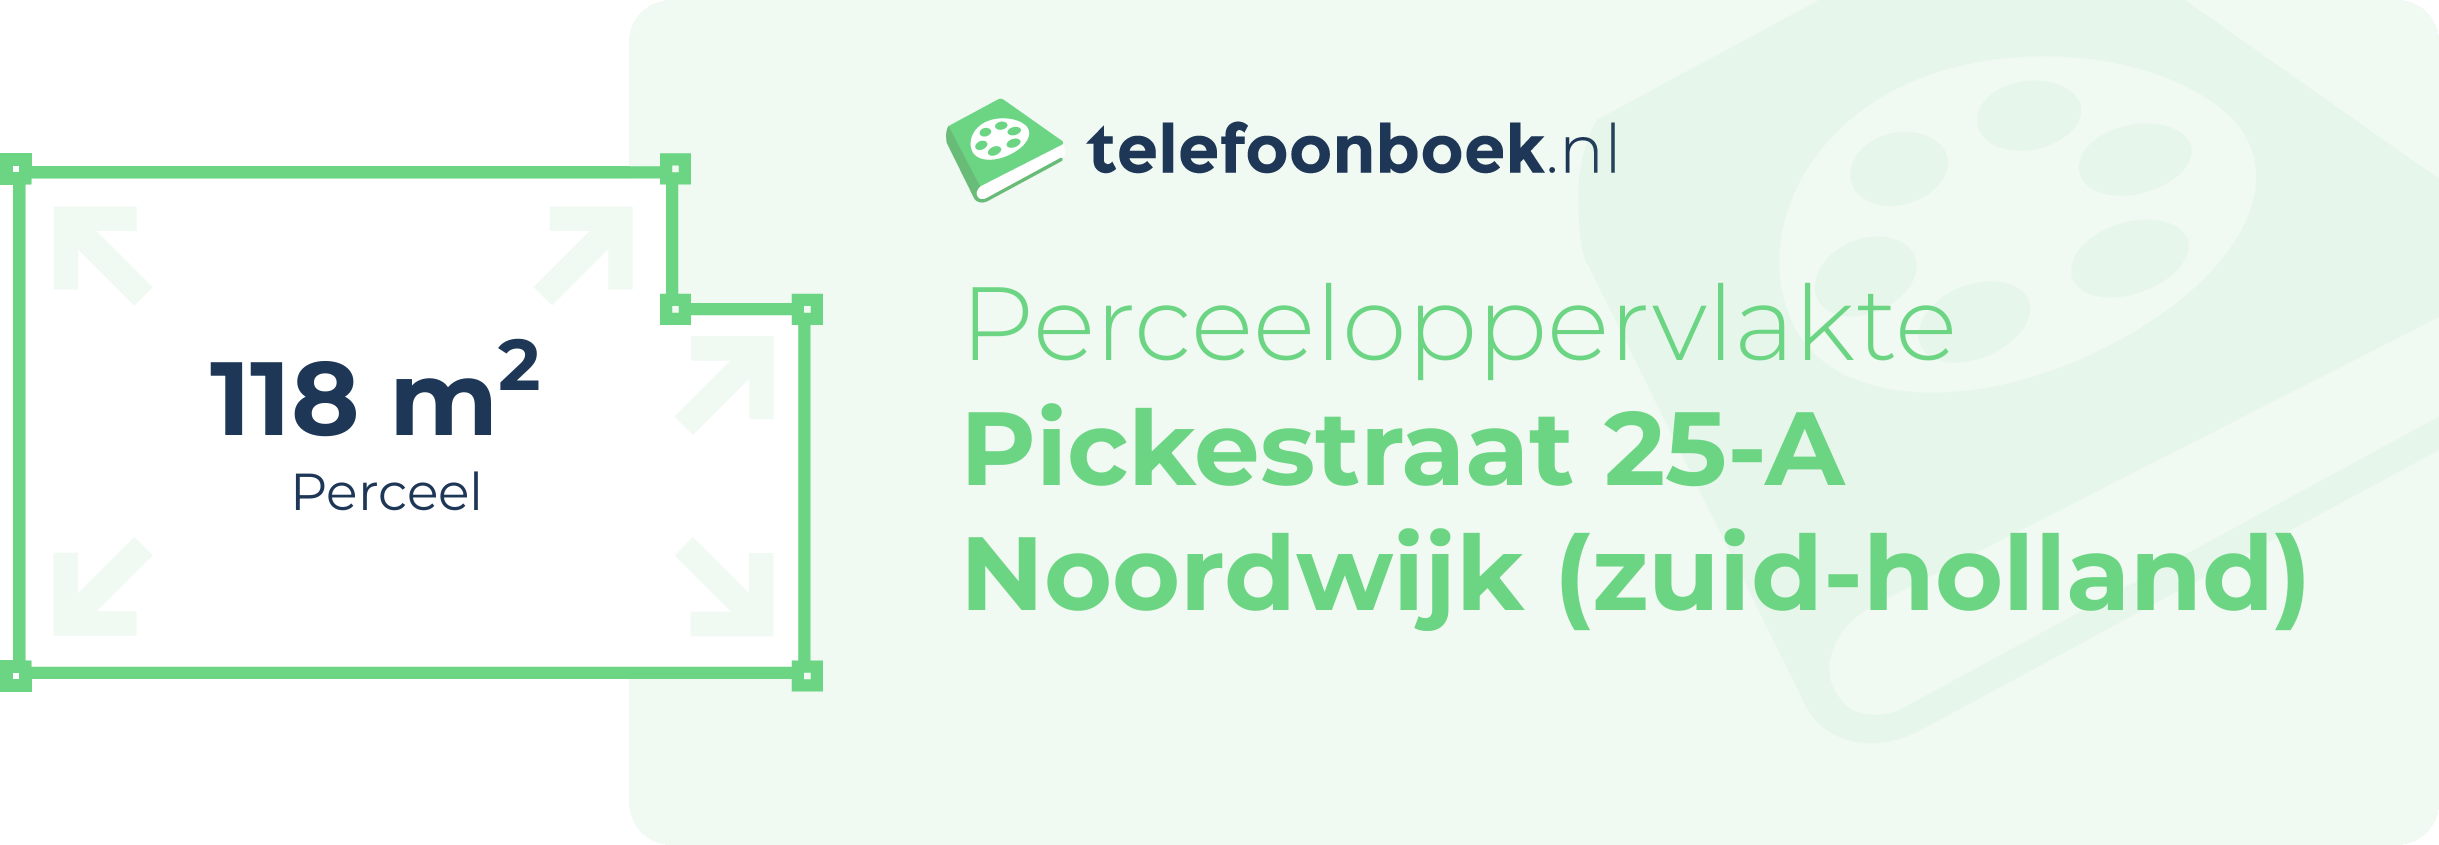 Perceeloppervlakte Pickestraat 25-A Noordwijk (Zuid-Holland)